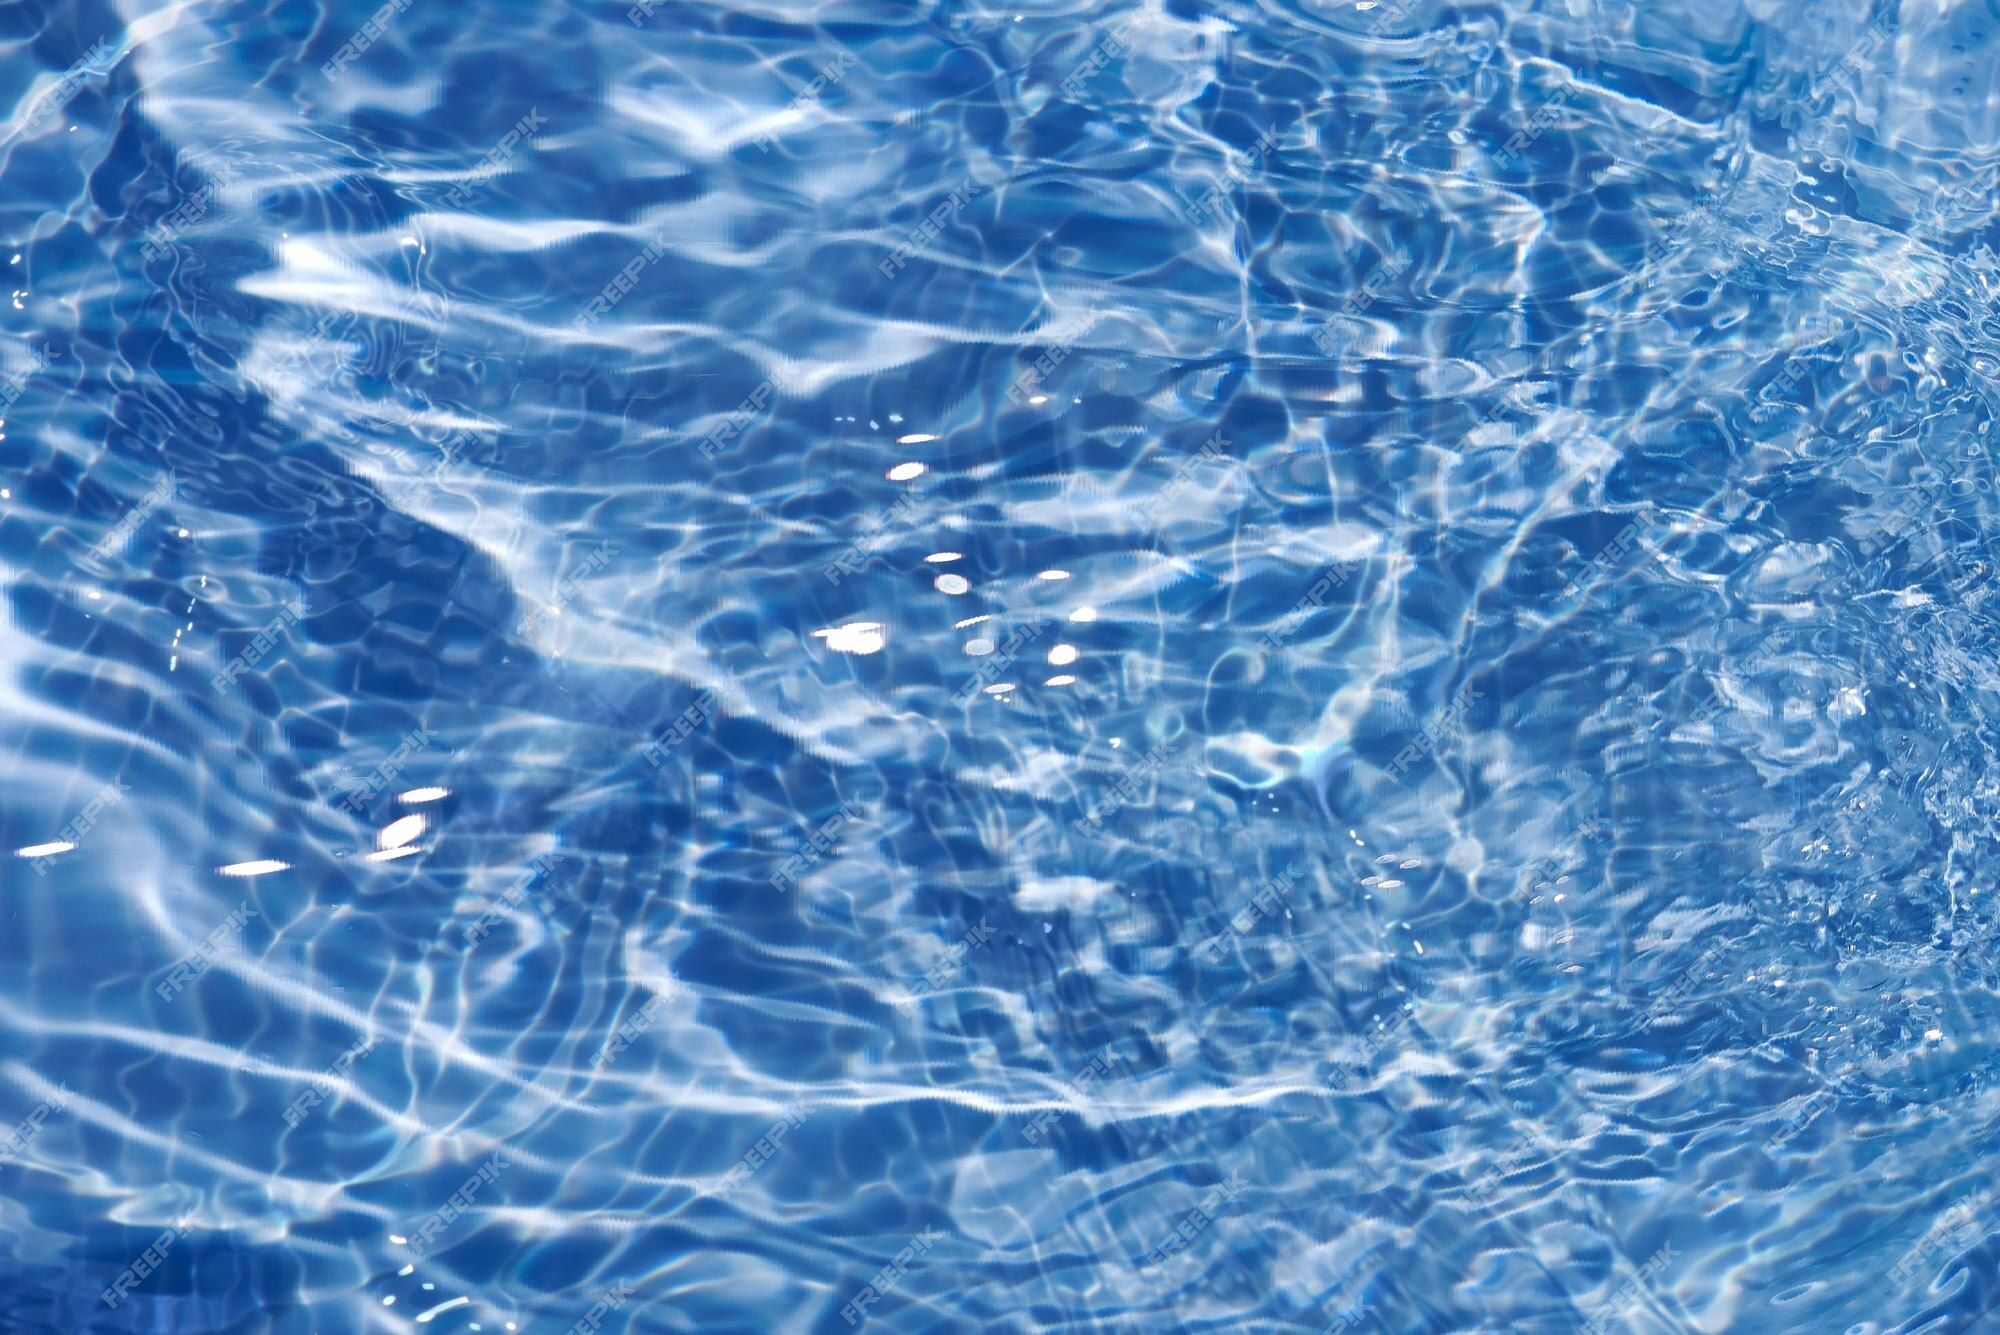  Ruhiges Hintergrundbild 2000x1335. Blaues wasser mit wellen auf der oberfläche unscharfes, transparentes, blau gefärbtes, klares, ruhiges wasser